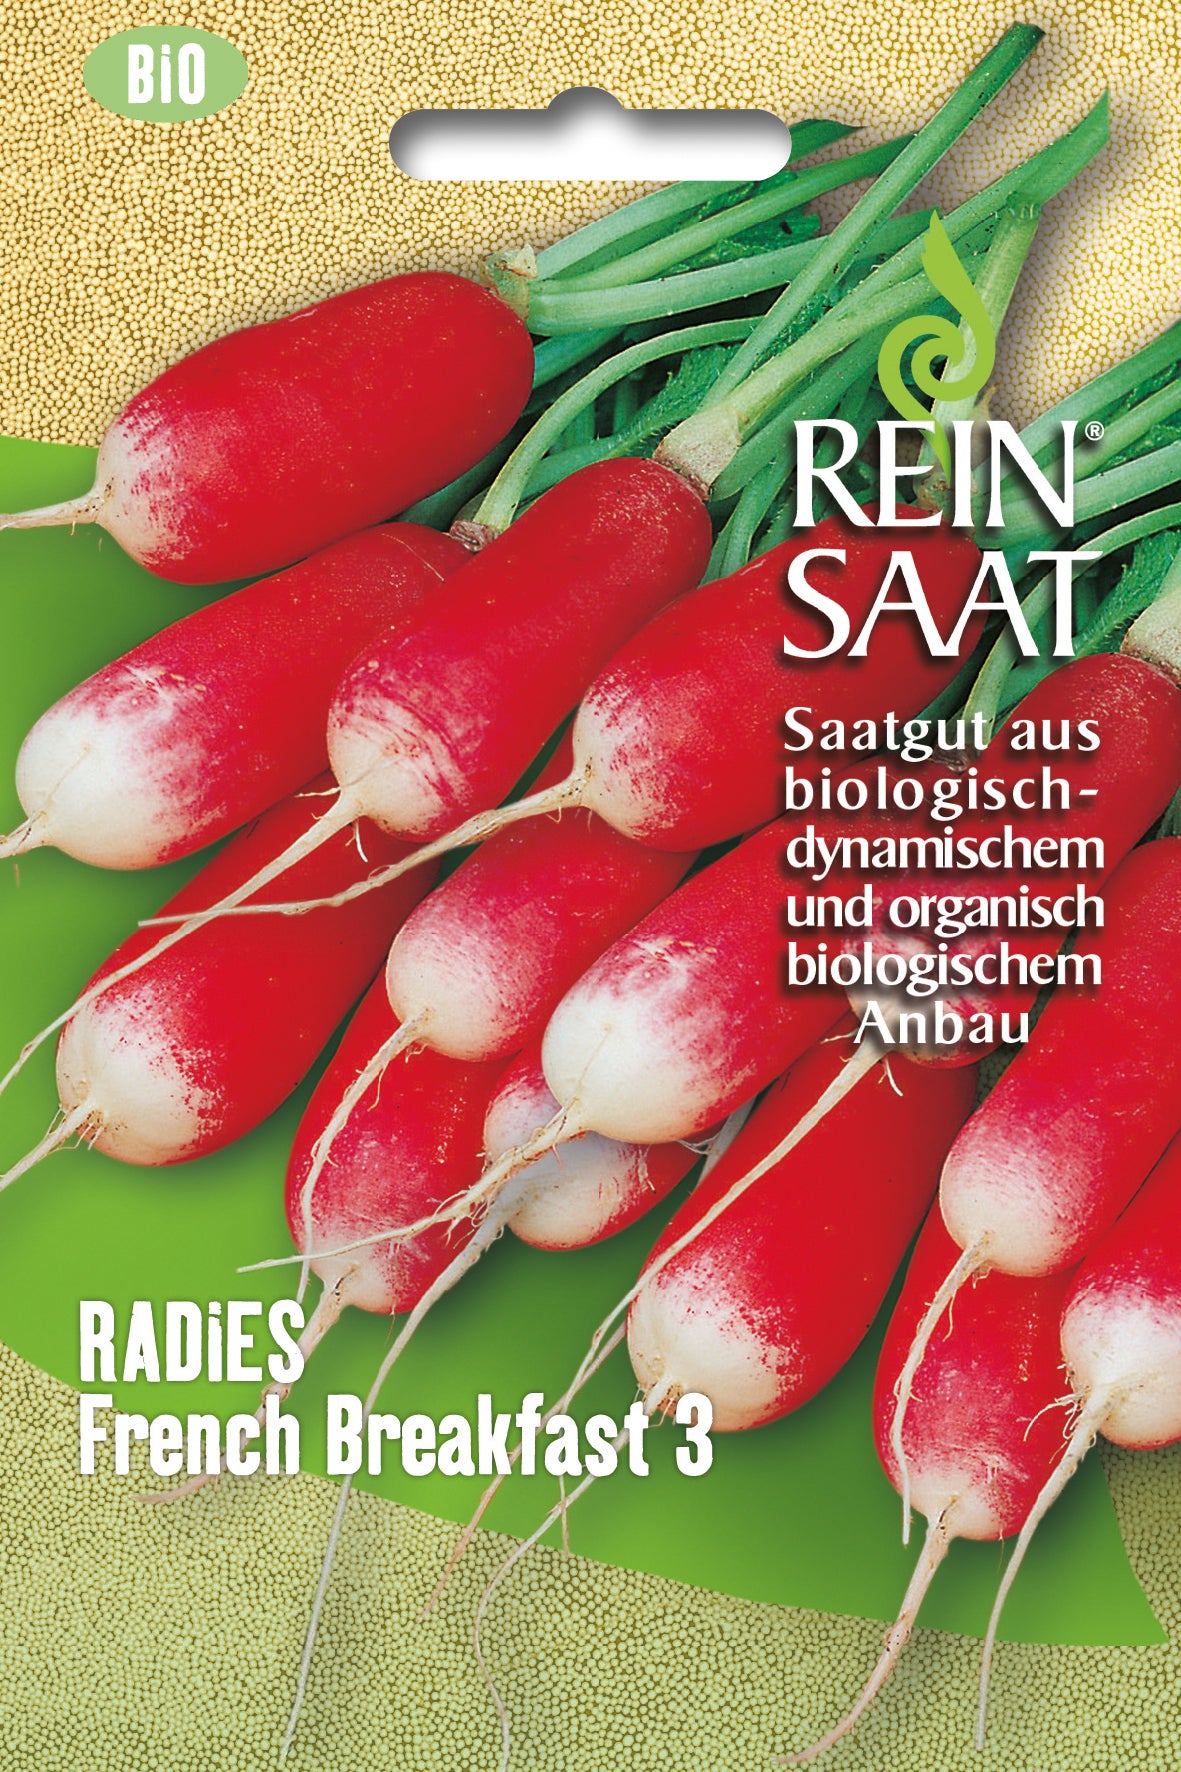 Radies French Breakfast 3 | BIO Radieschensamen von Reinsaat